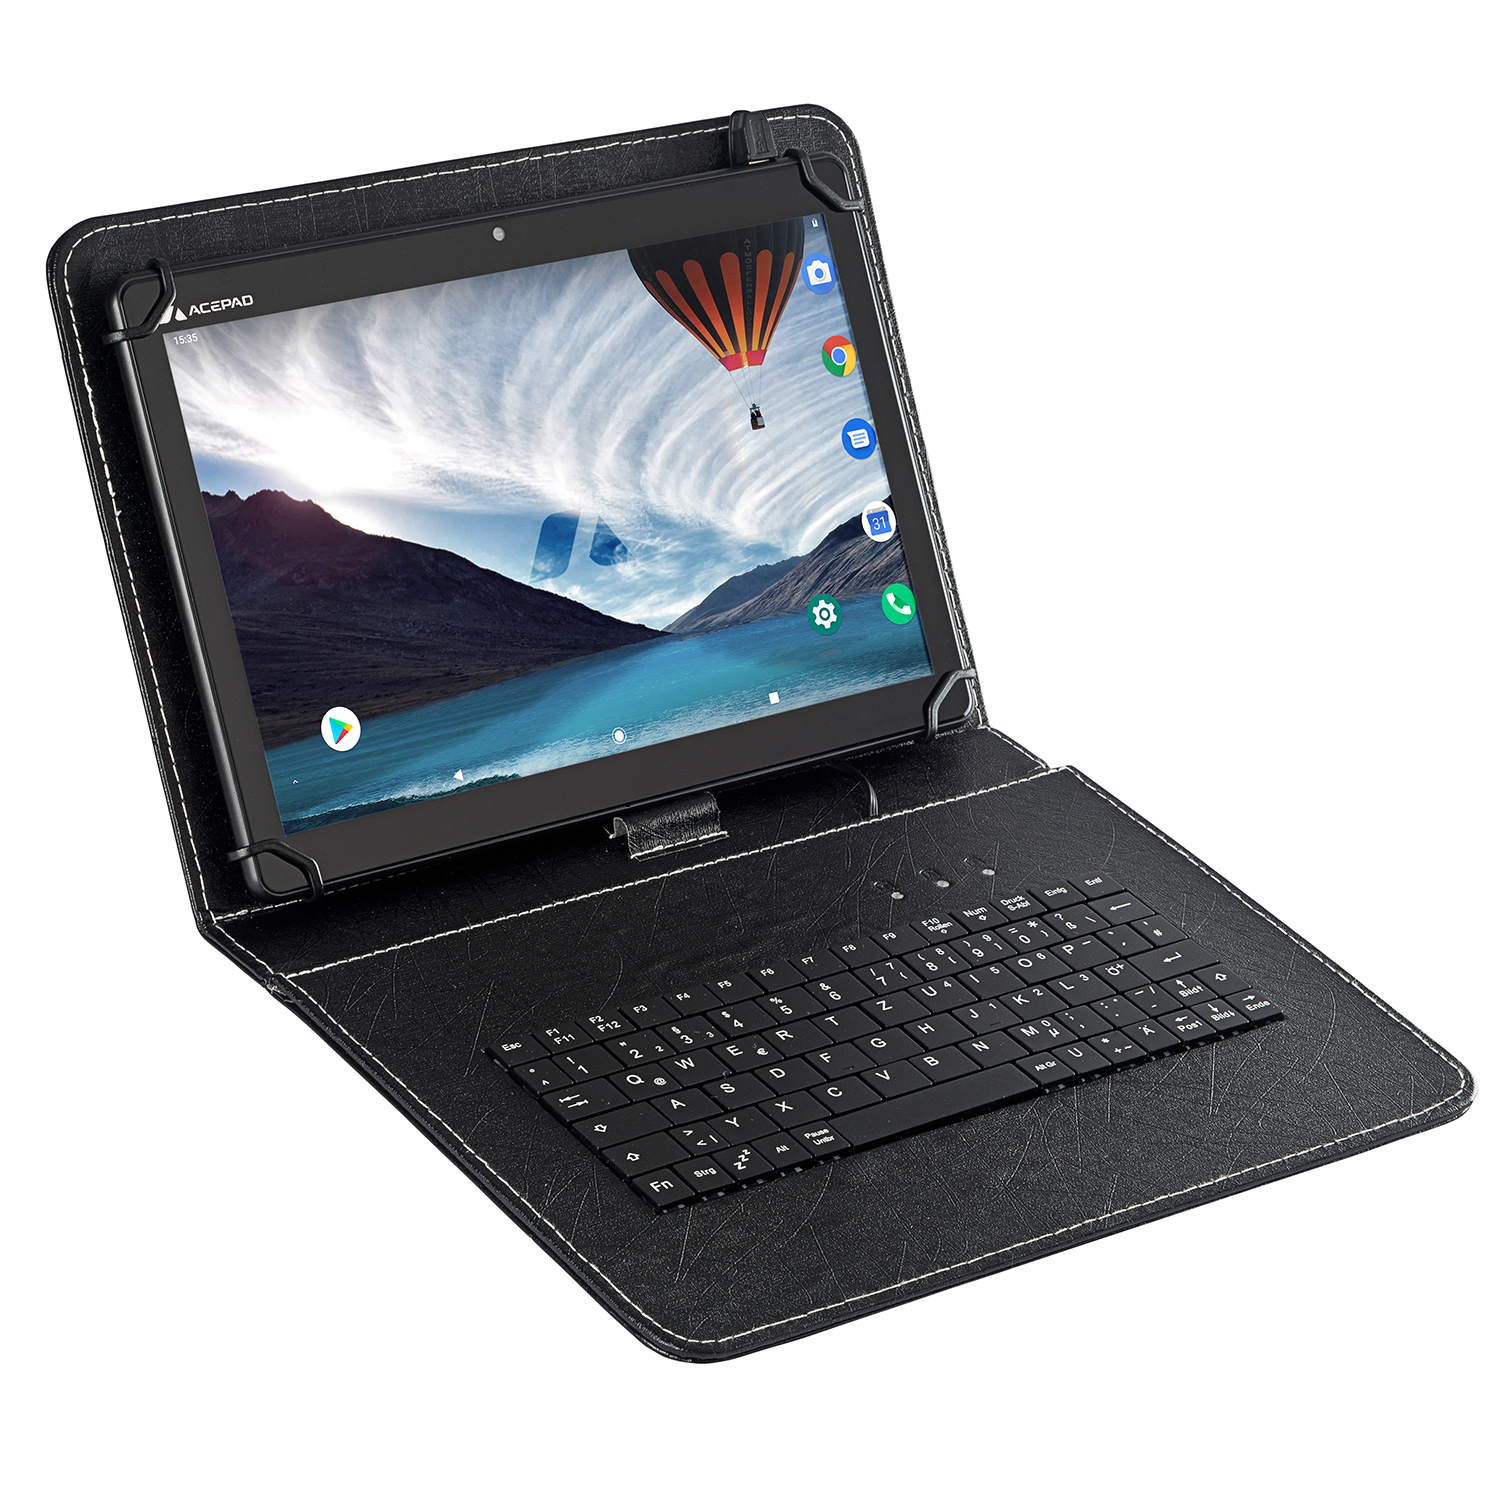 ACEPAD A145T, LTE, Octa-Core, 6GB RAM, Tastatur, Schwarz GB, 128 10,1 Zoll, mit Tablet FHD